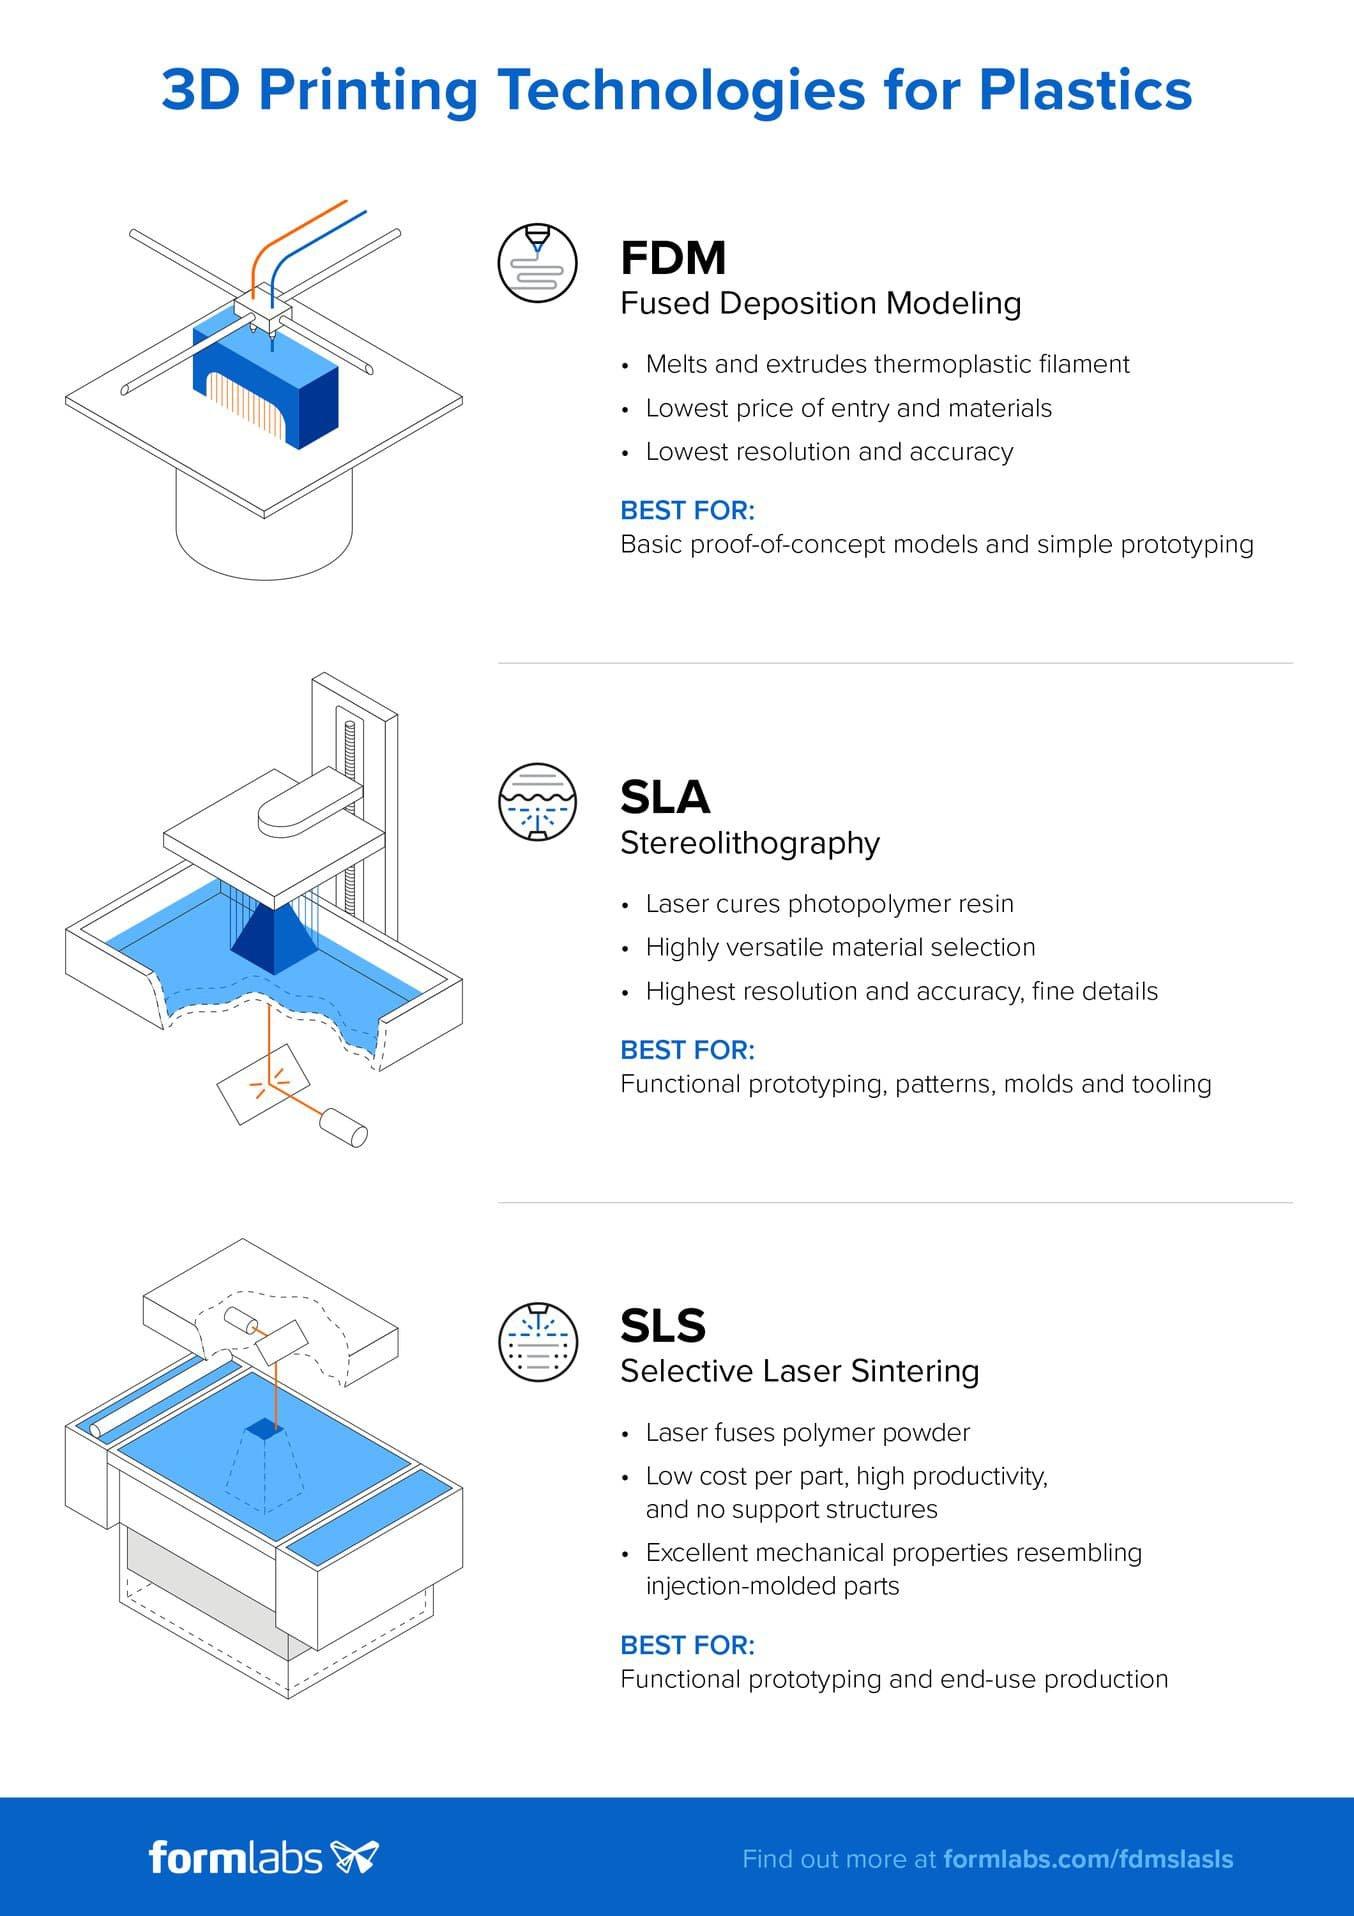 Descarga la versión en alta resolución de esta infografía haciendo clic aquí. ¿Quieres saber más acerca de las tecnologías e impresión 3D FDM, SLA y SLS? Consulta nuestra guía exhaustiva.